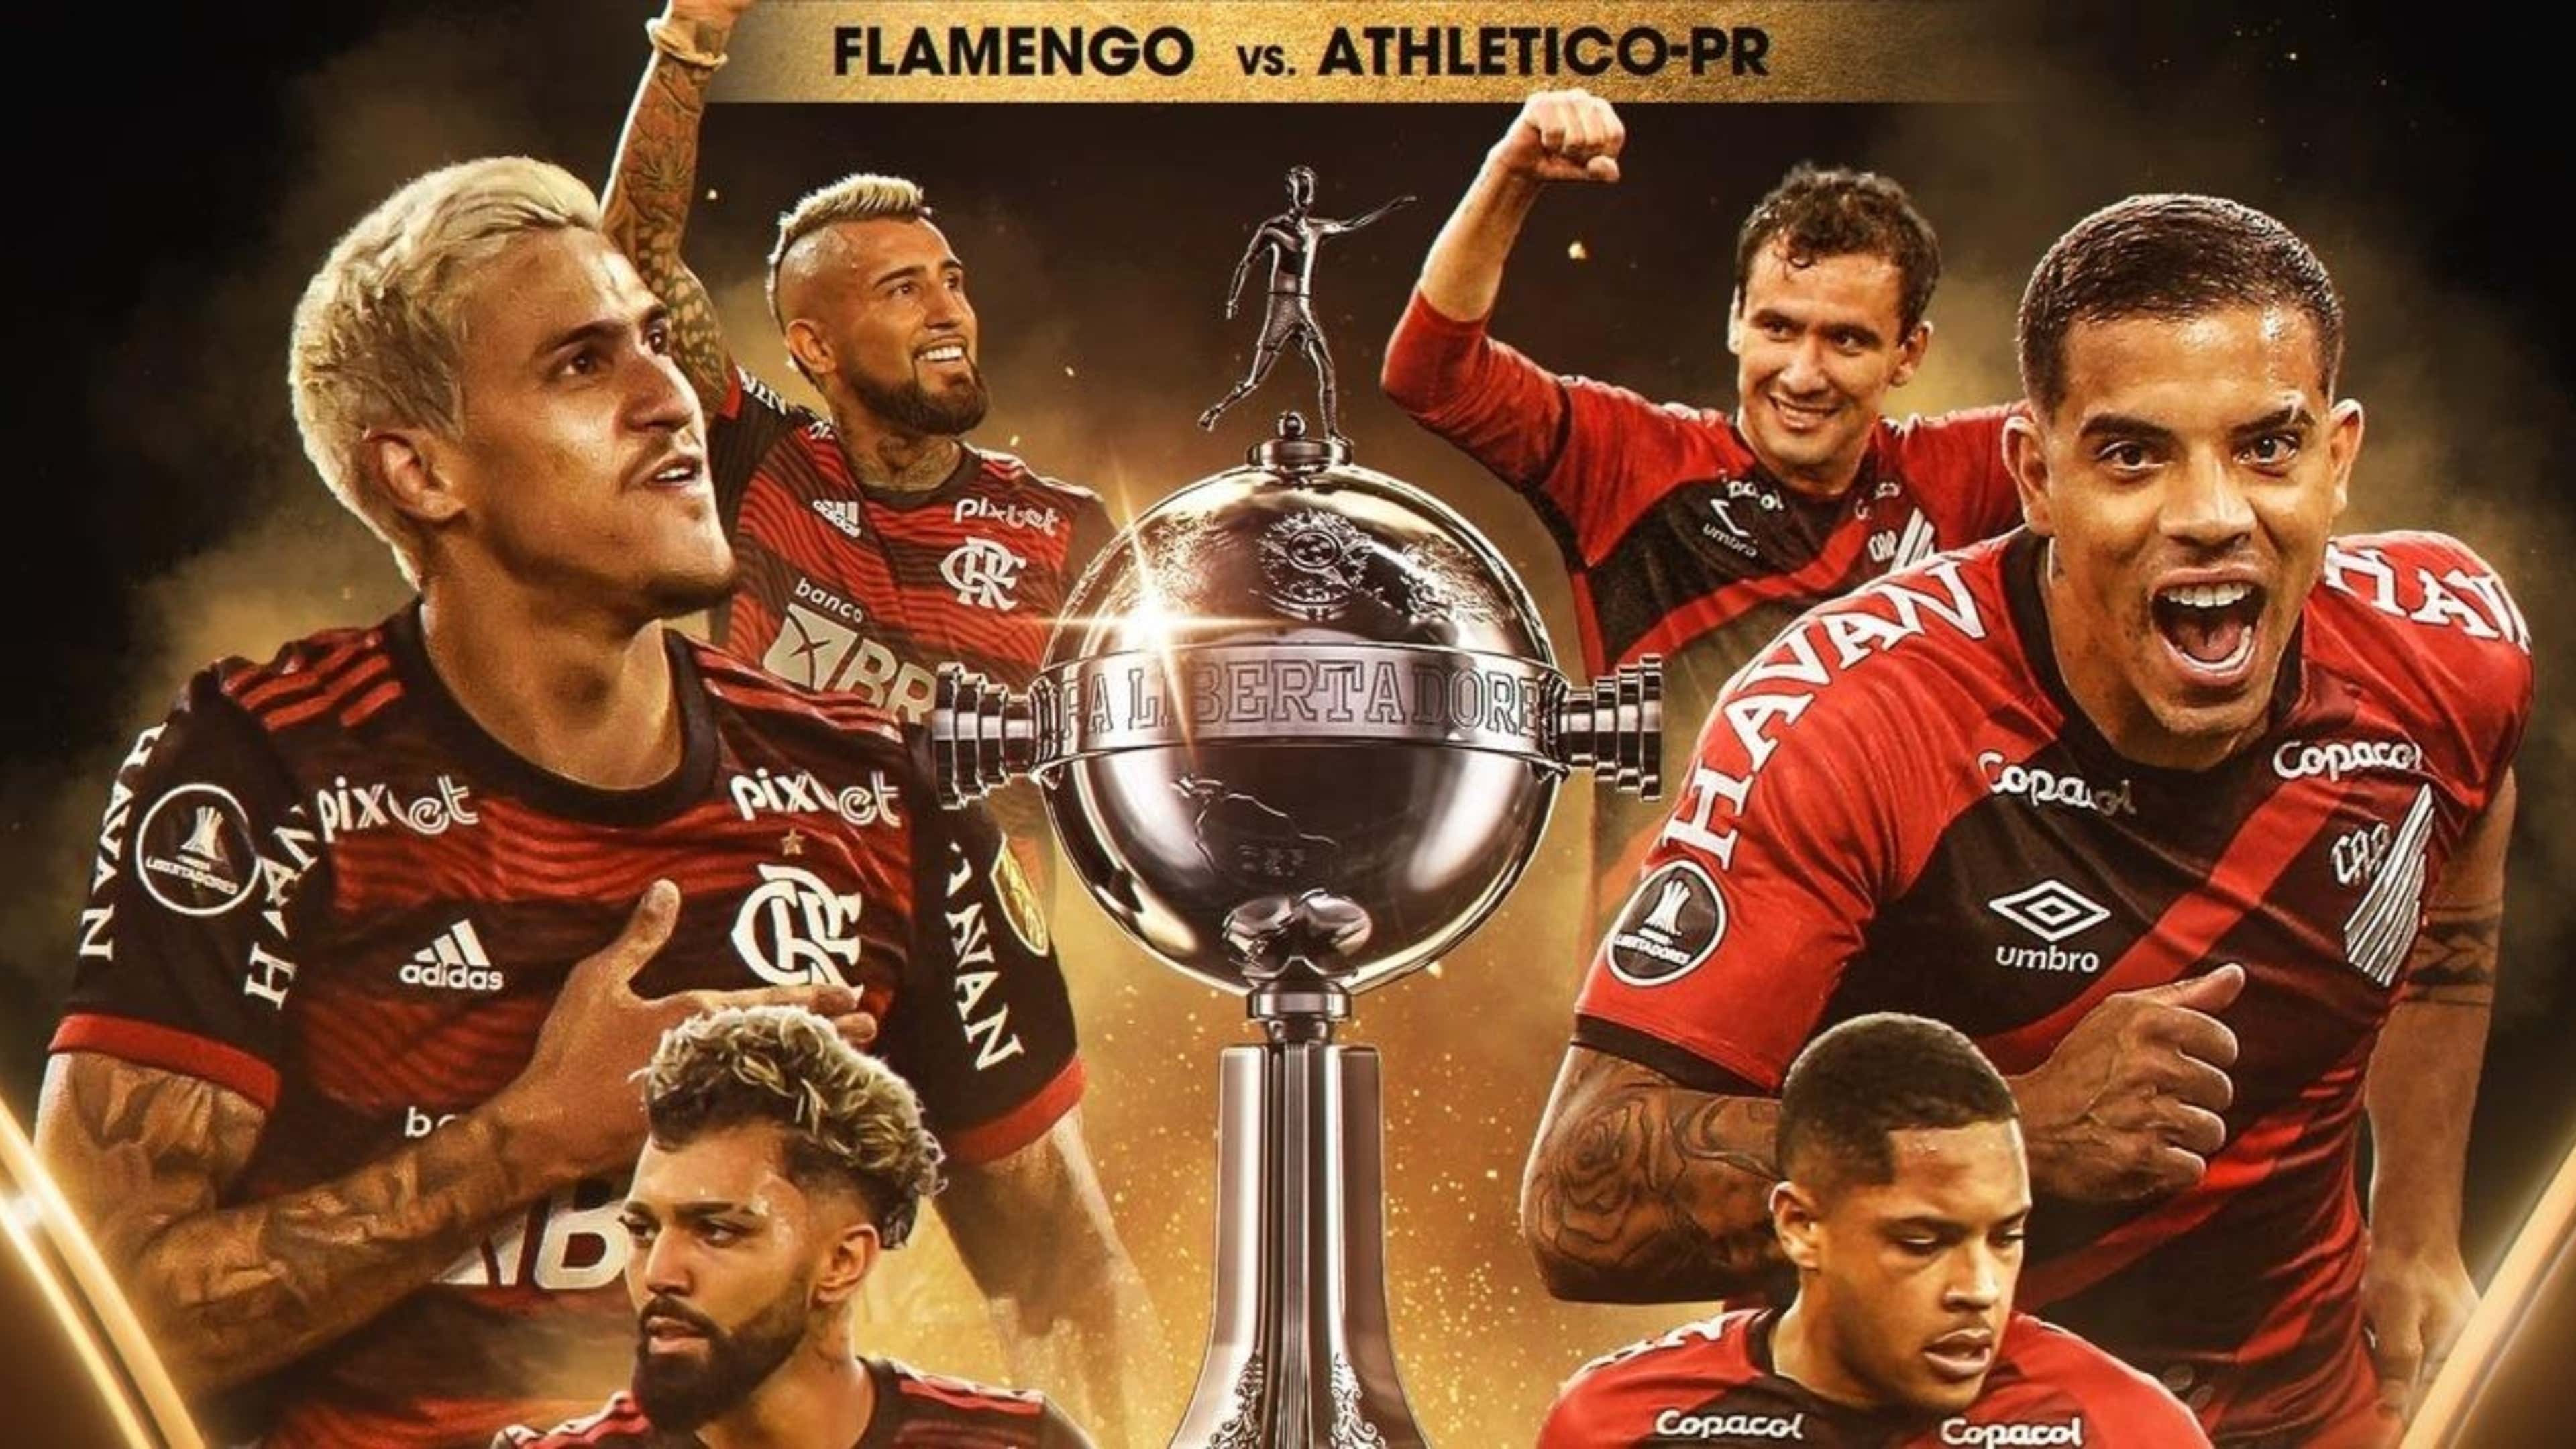 Jogo do Flamengo  Jogo do flamengo, Fotos de tv, Apostas online